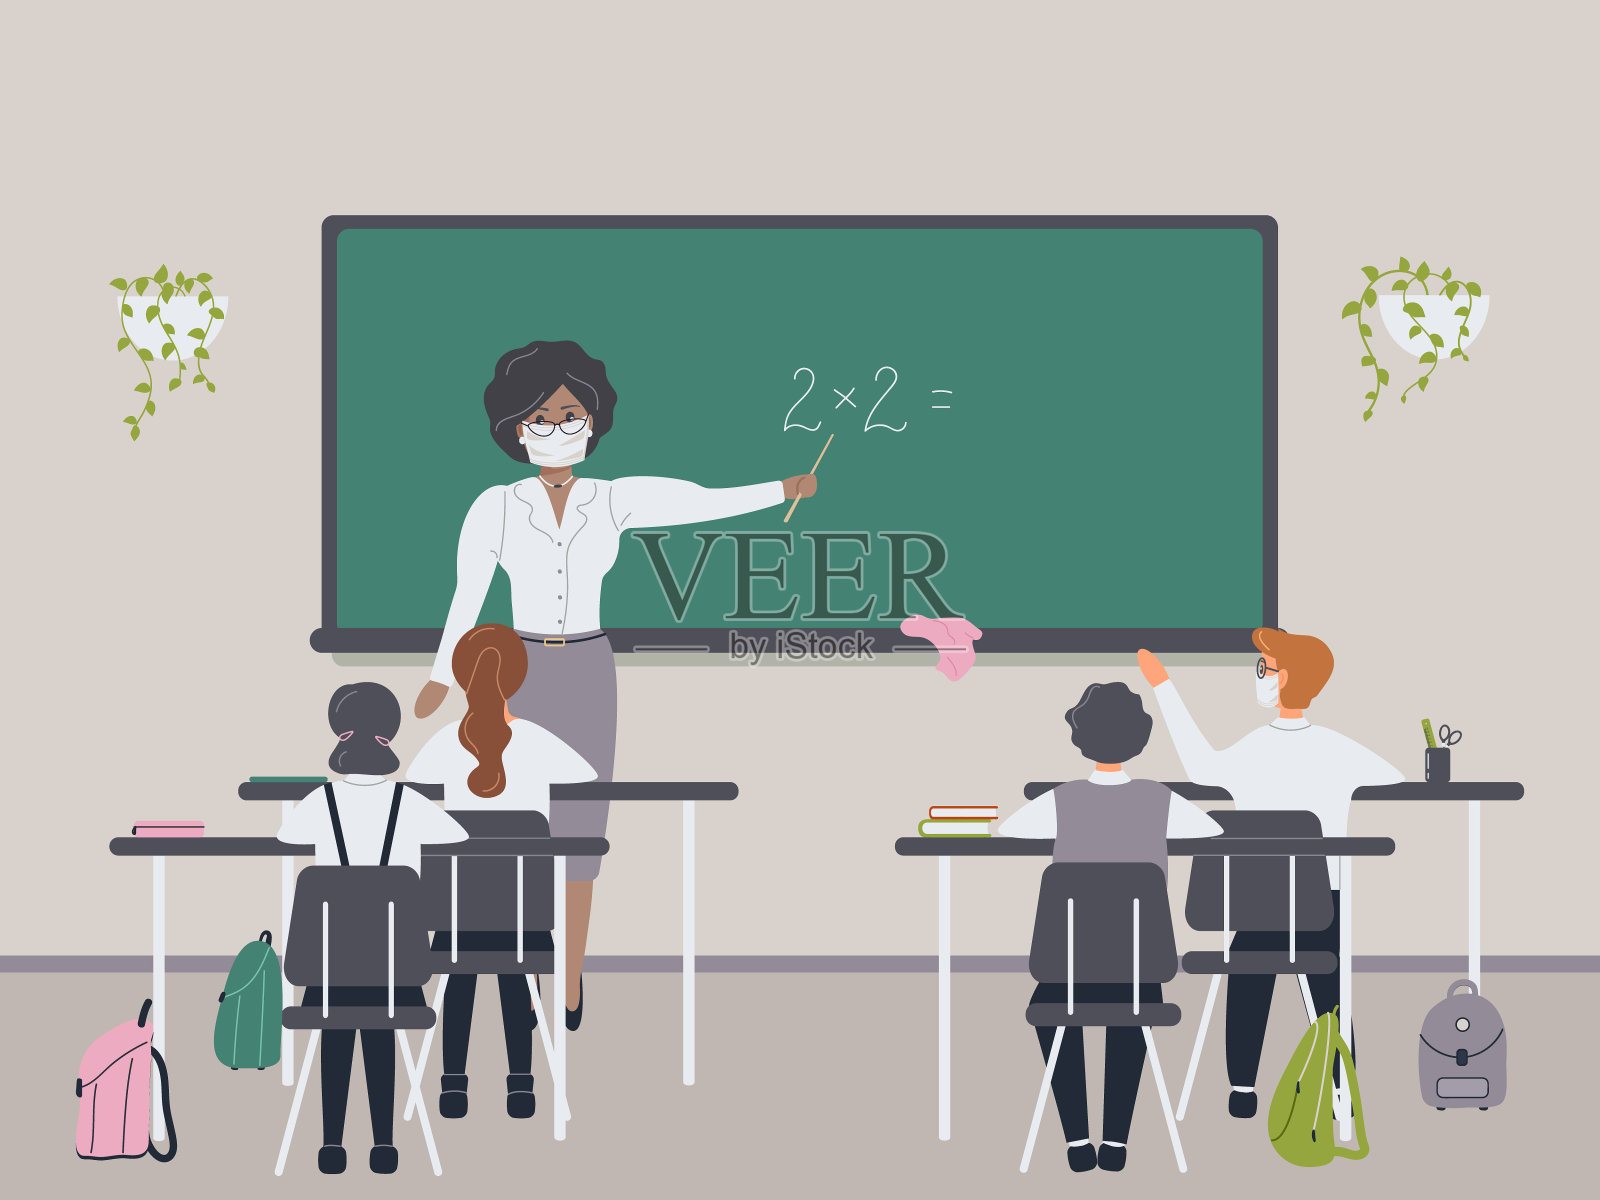 非洲女数学老师在黑板旁向小学生或孩子解释乘法。一位年轻女性教坐在课桌前的孩子们数学或算术。向量插画图片素材